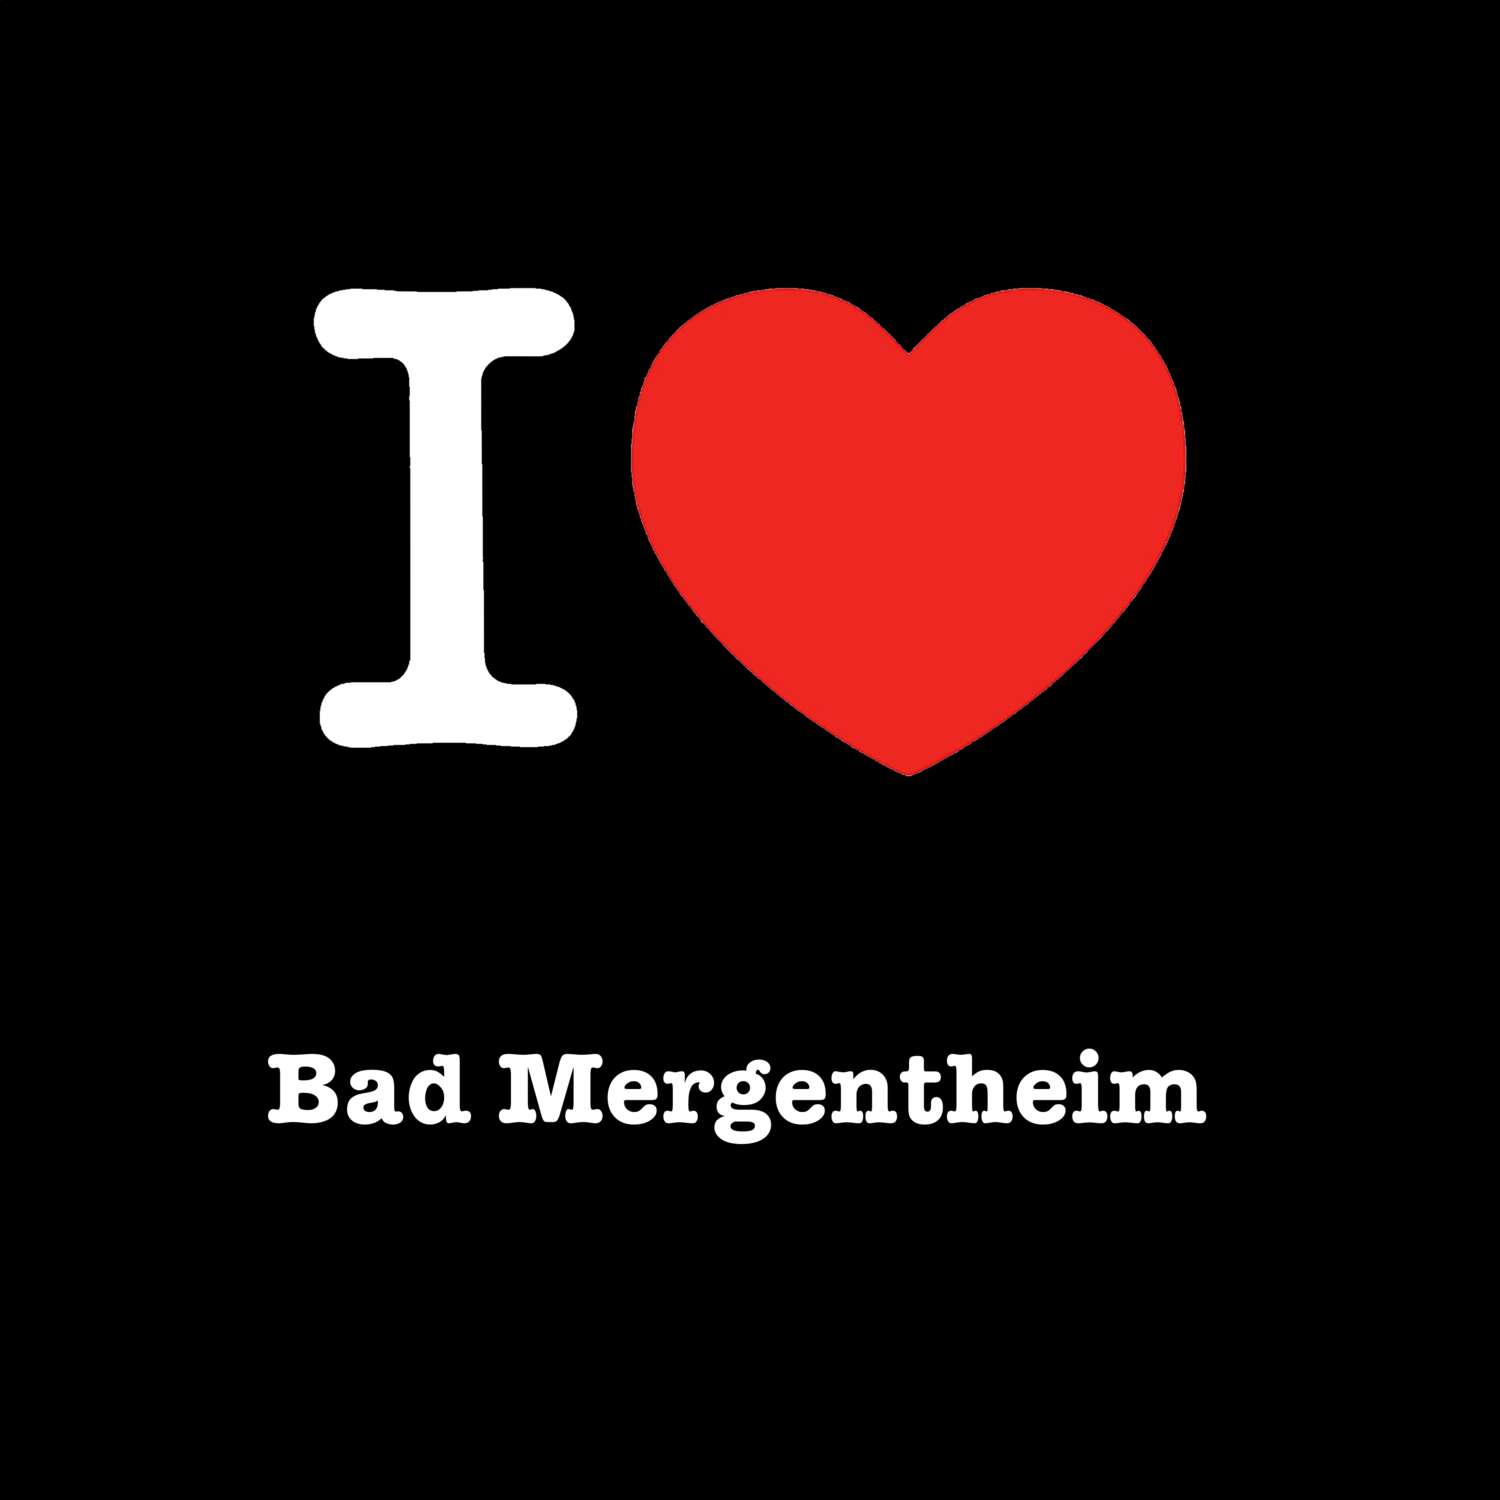 Bad Mergentheim T-Shirt »I love«